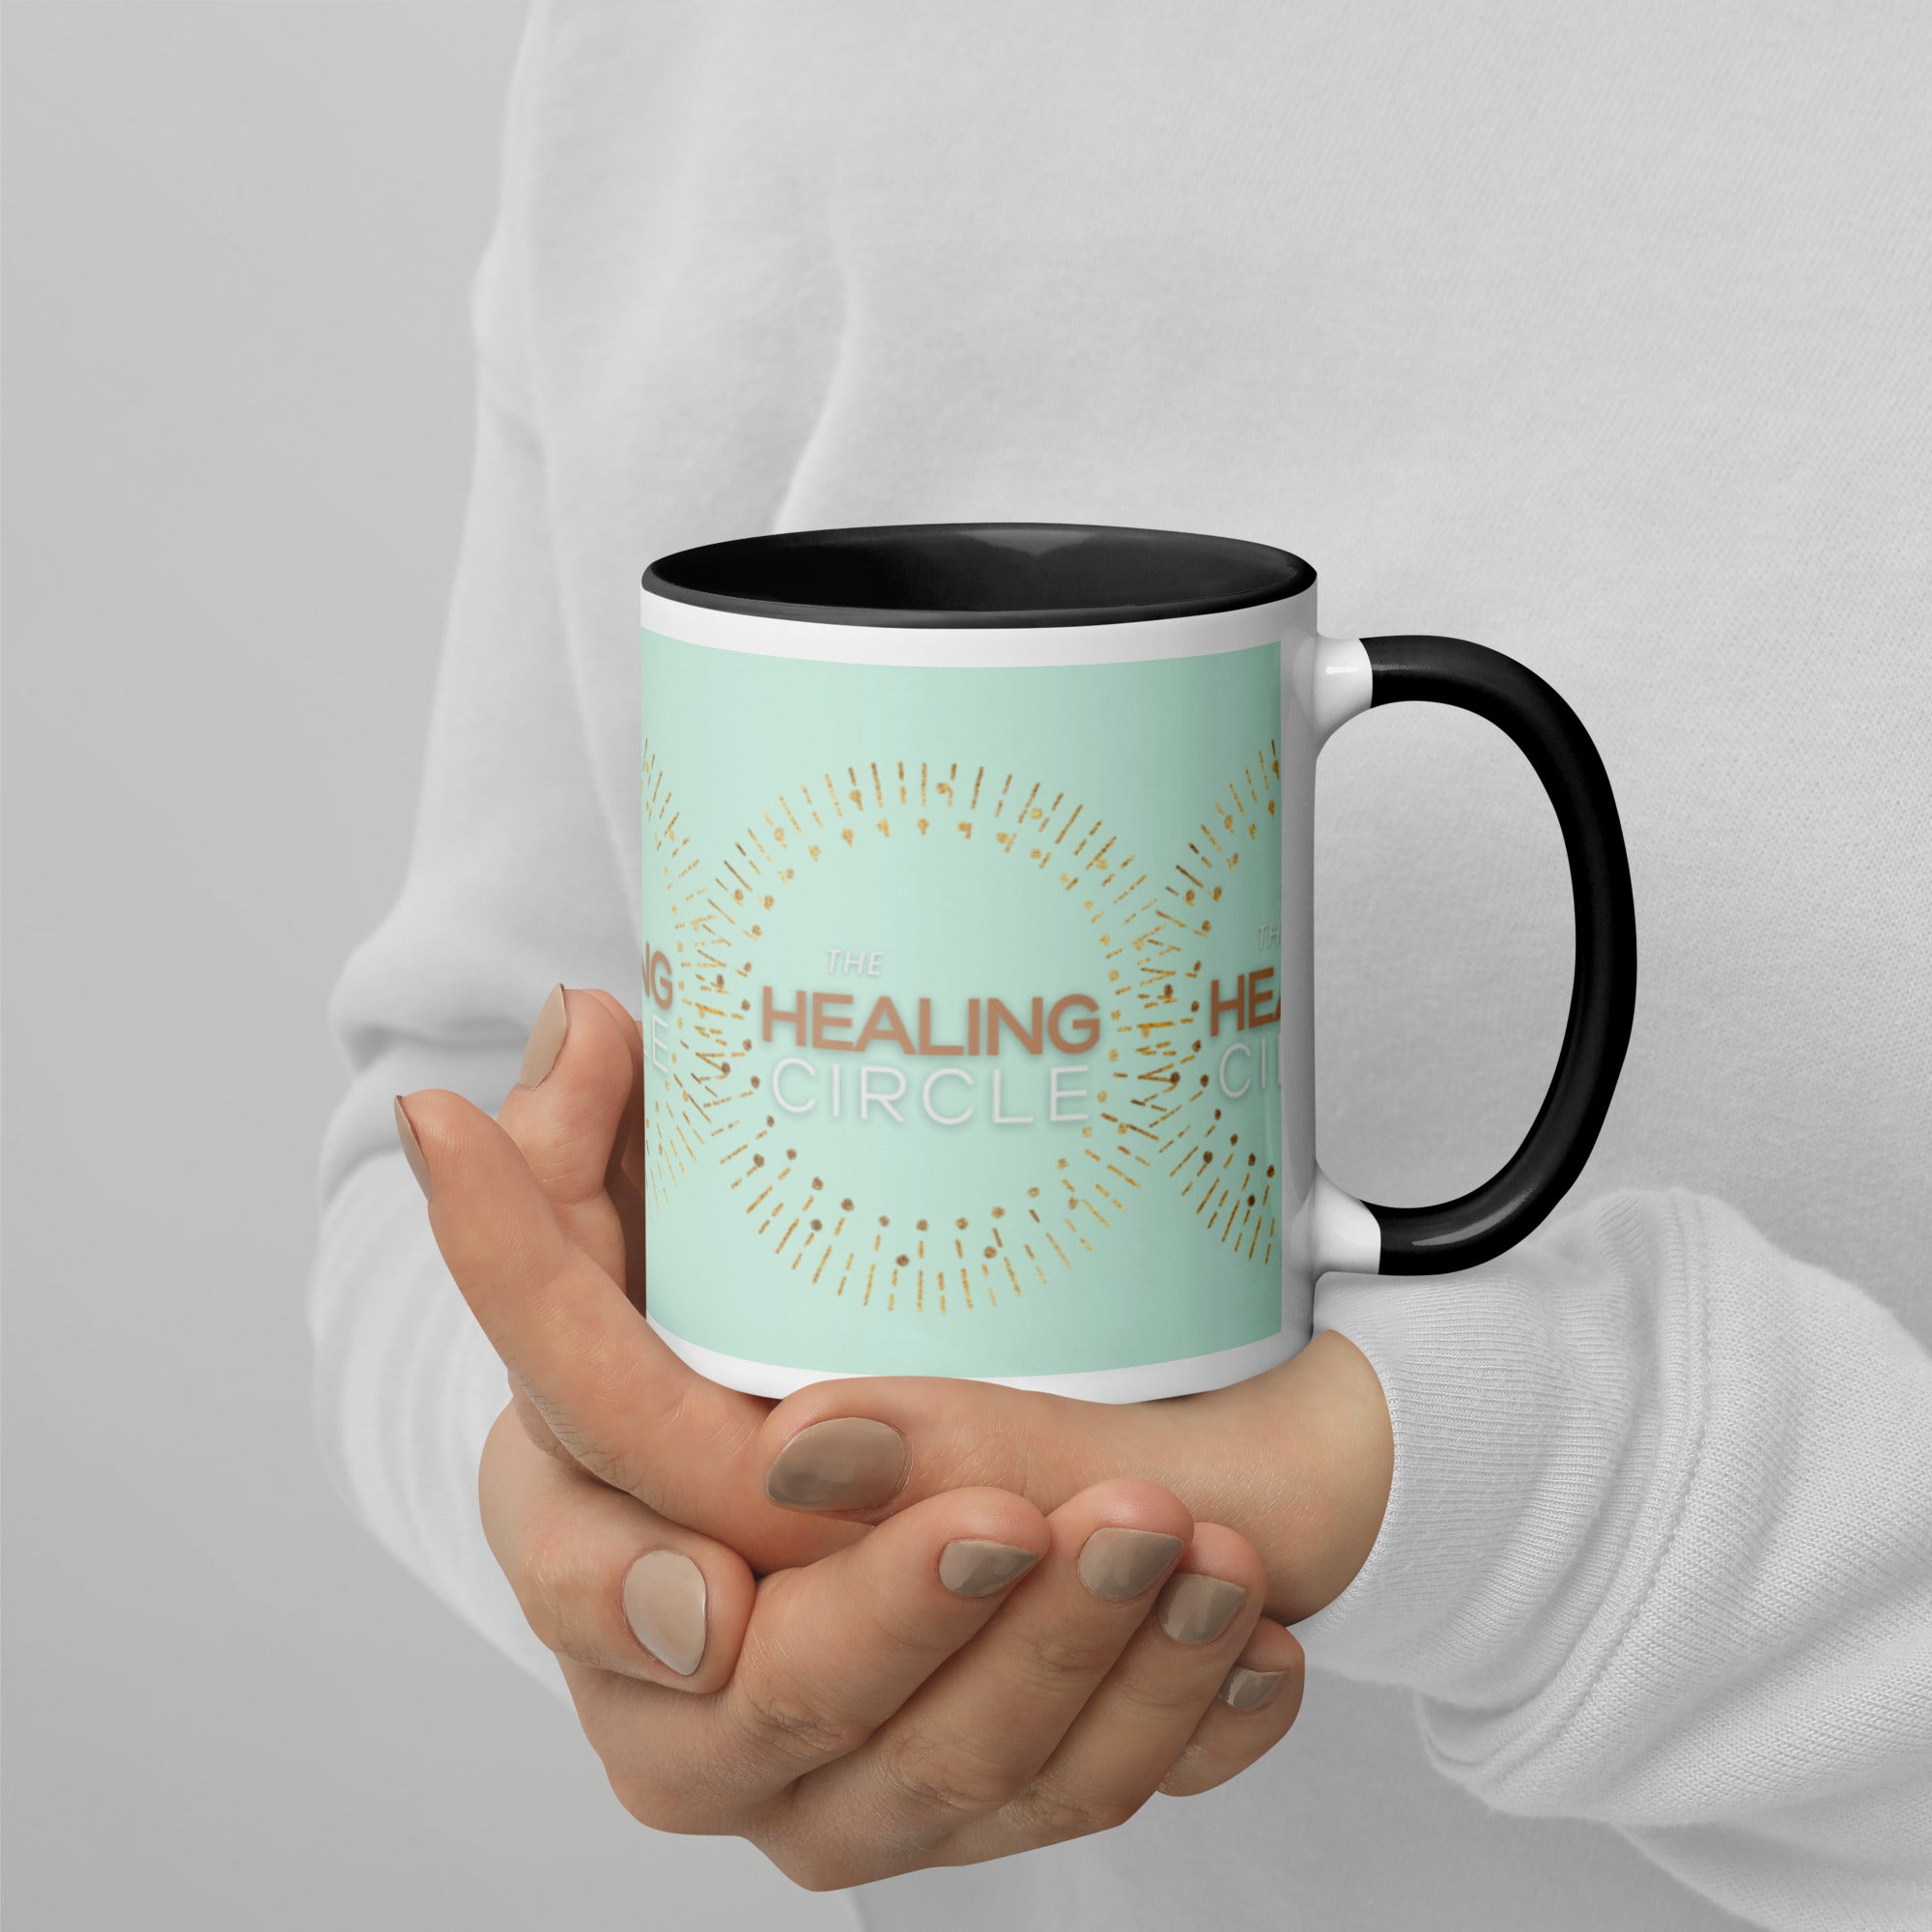 "The Healing Circle" Mug